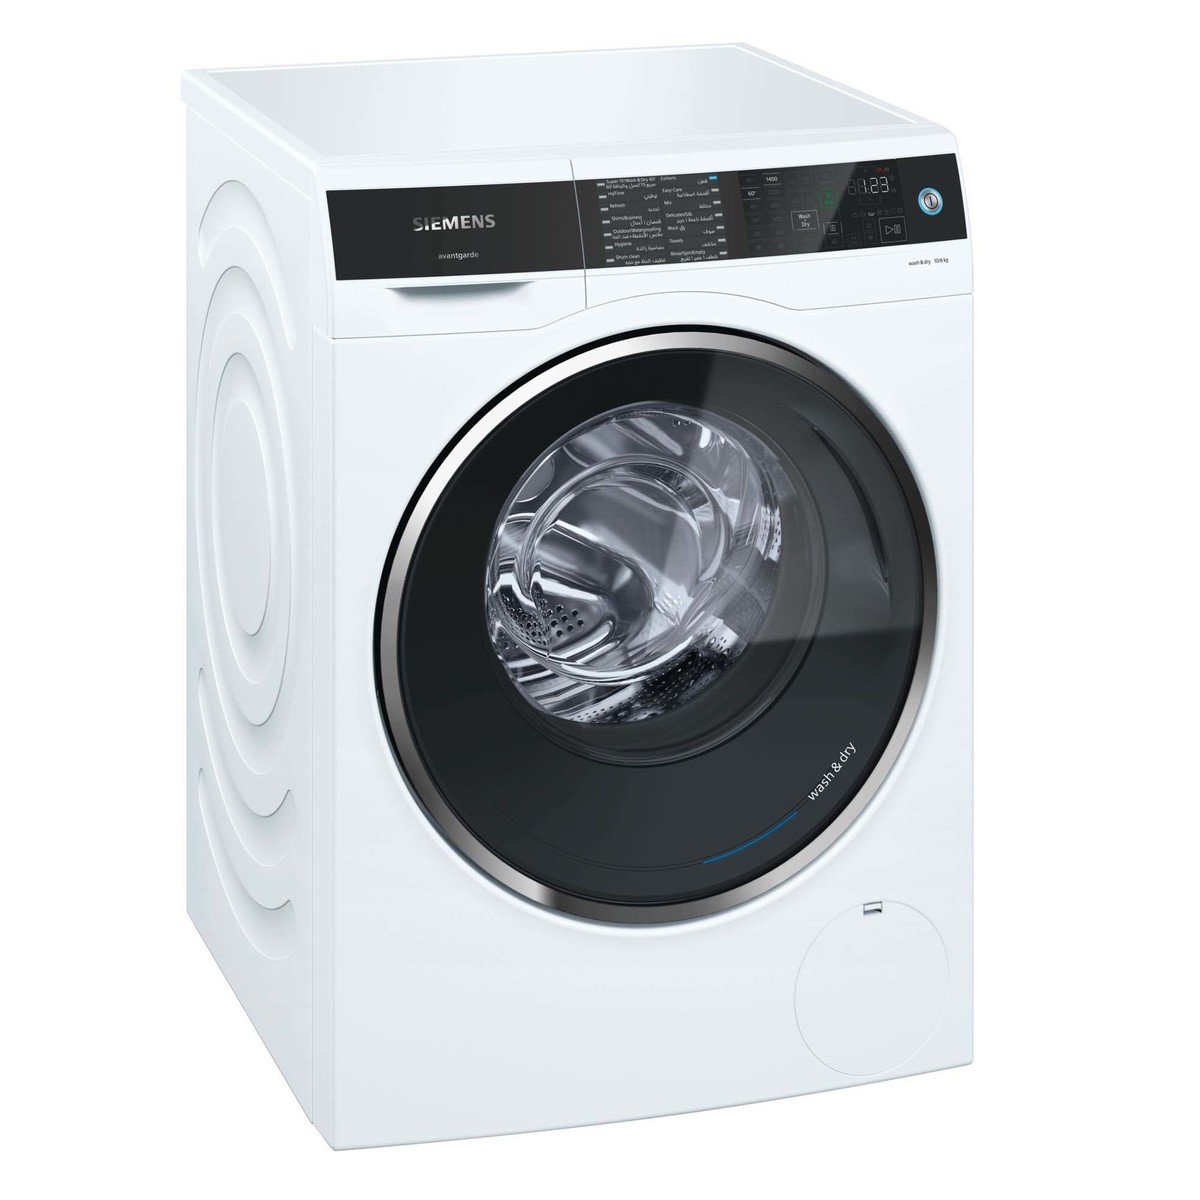 Siemens Front Load Washer & Dryer WD14U520GC 10/6Kg